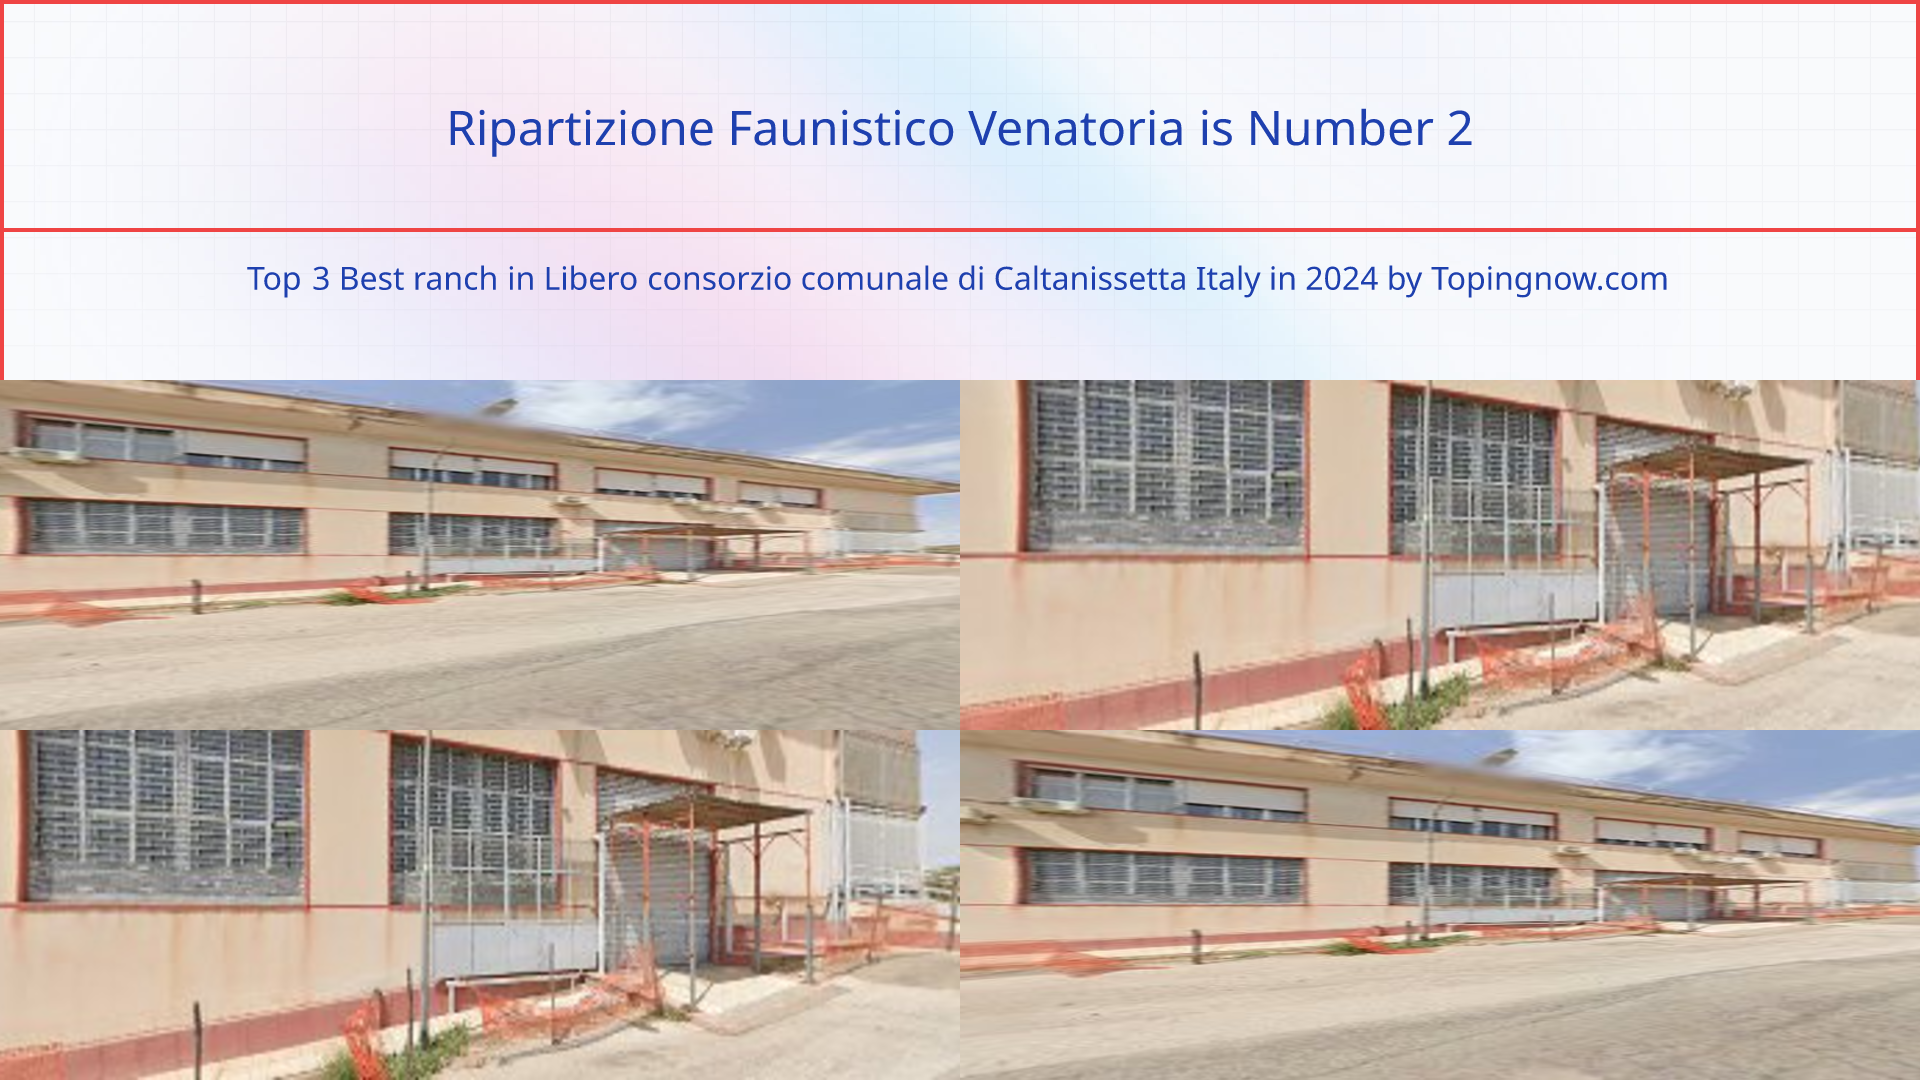 Ripartizione Faunistico Venatoria: Top 3 Best ranch in Libero consorzio comunale di Caltanissetta Italy in 2024